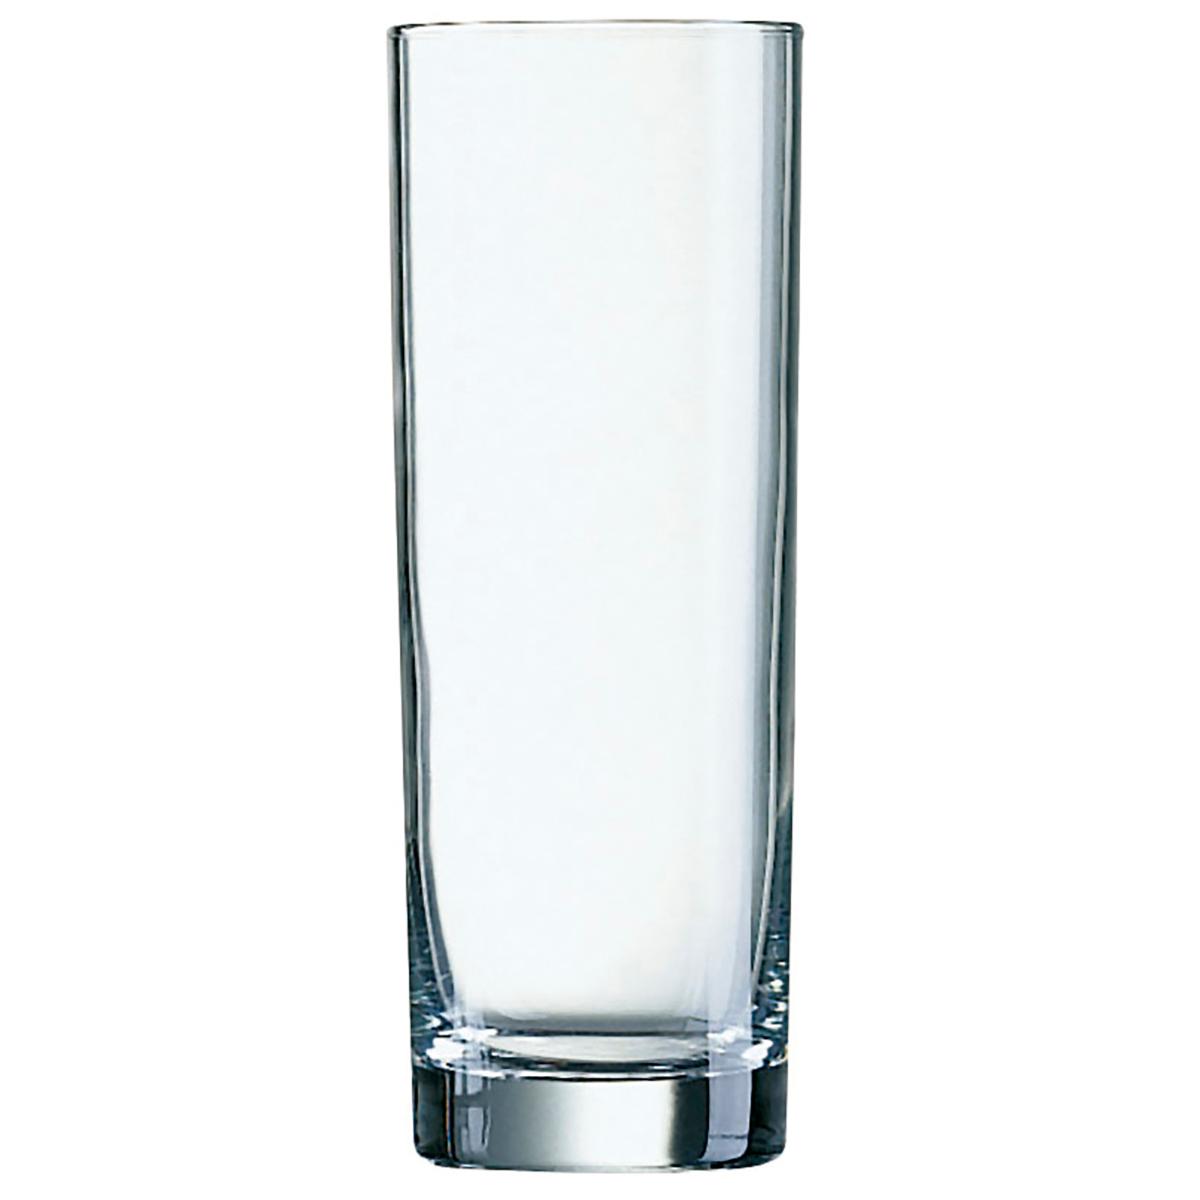 Arcoroc - ARCOROC ISLANDE Caja 6 Vasos Altos Vidrio 31CL Transparente Brillo Fabricado en Francia , Facil de limpiar Reciclable , Ecológico , 100% higiénico , No poroso , Material 100% saludable , Larga duración No Apto Microondas , Apto Frigorífico 6 vasos altos 3